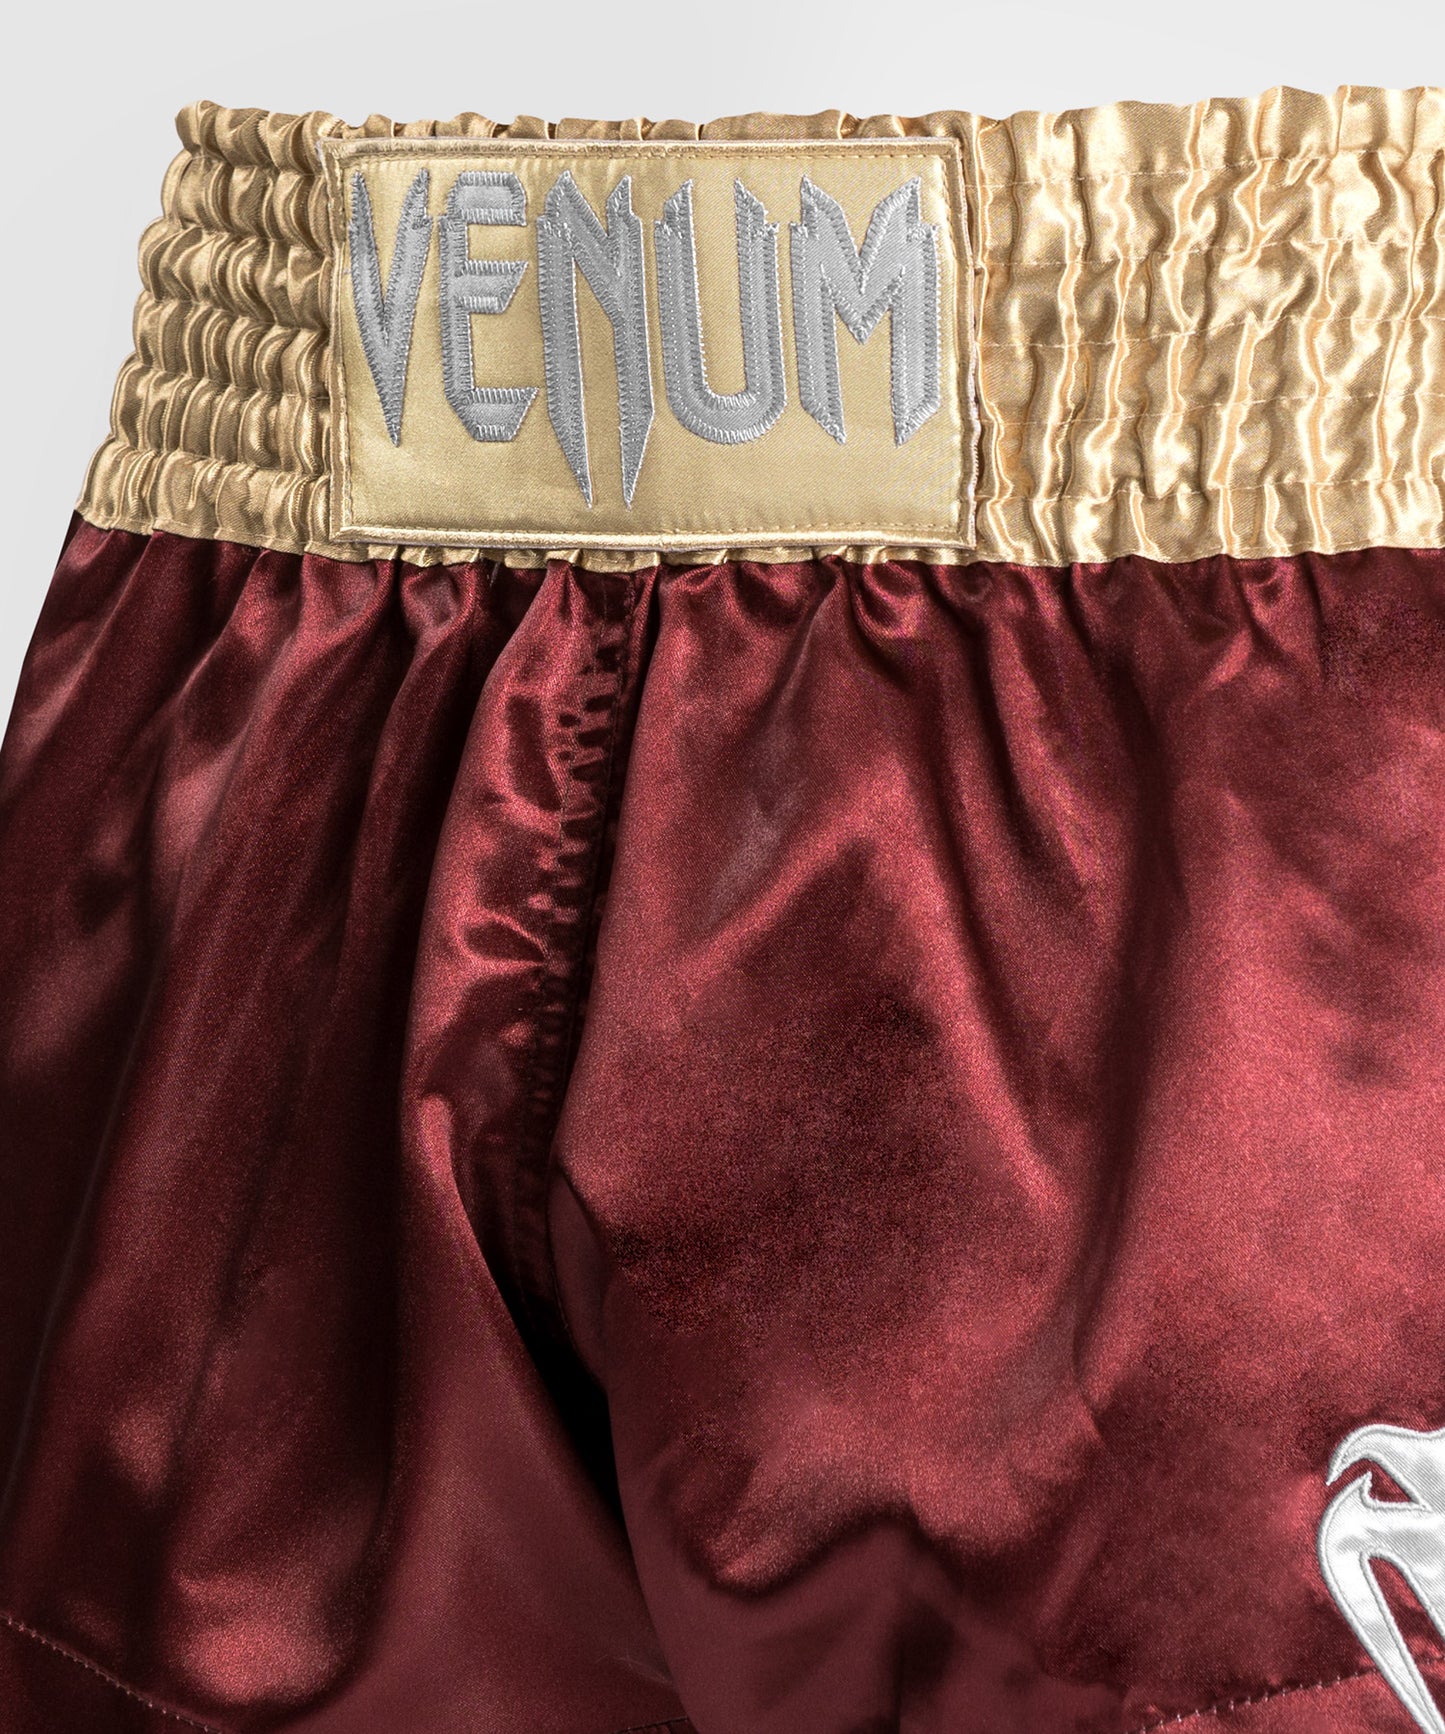 Venum Classic Muay Thai Shorts - Burgund/Gold/Weiß